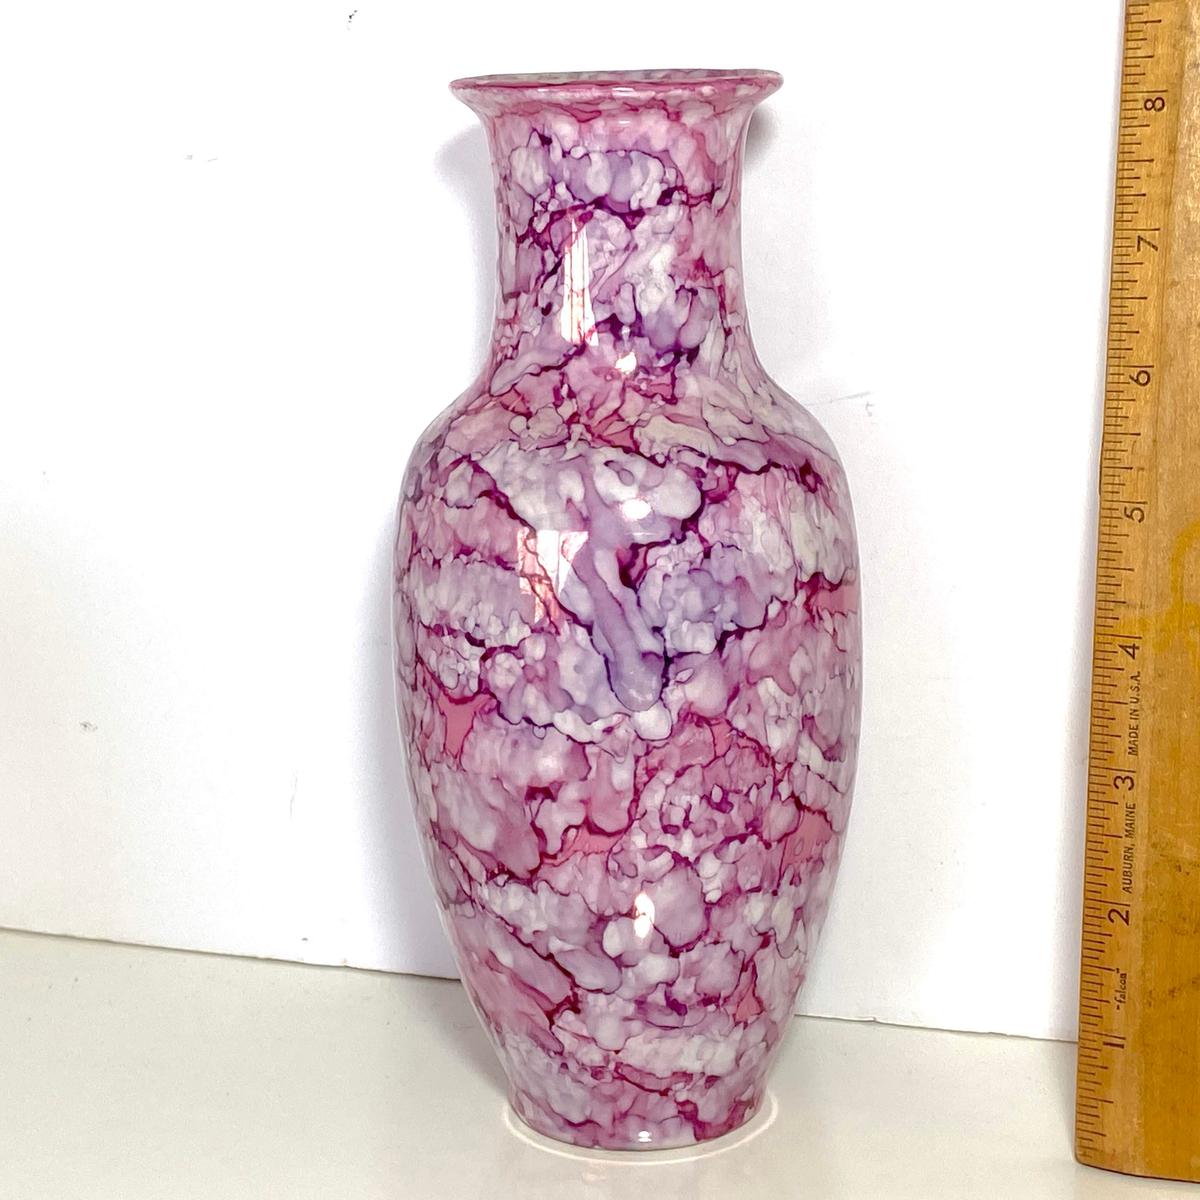 Pink Porcelain Vase with Unique Design Made in Japan